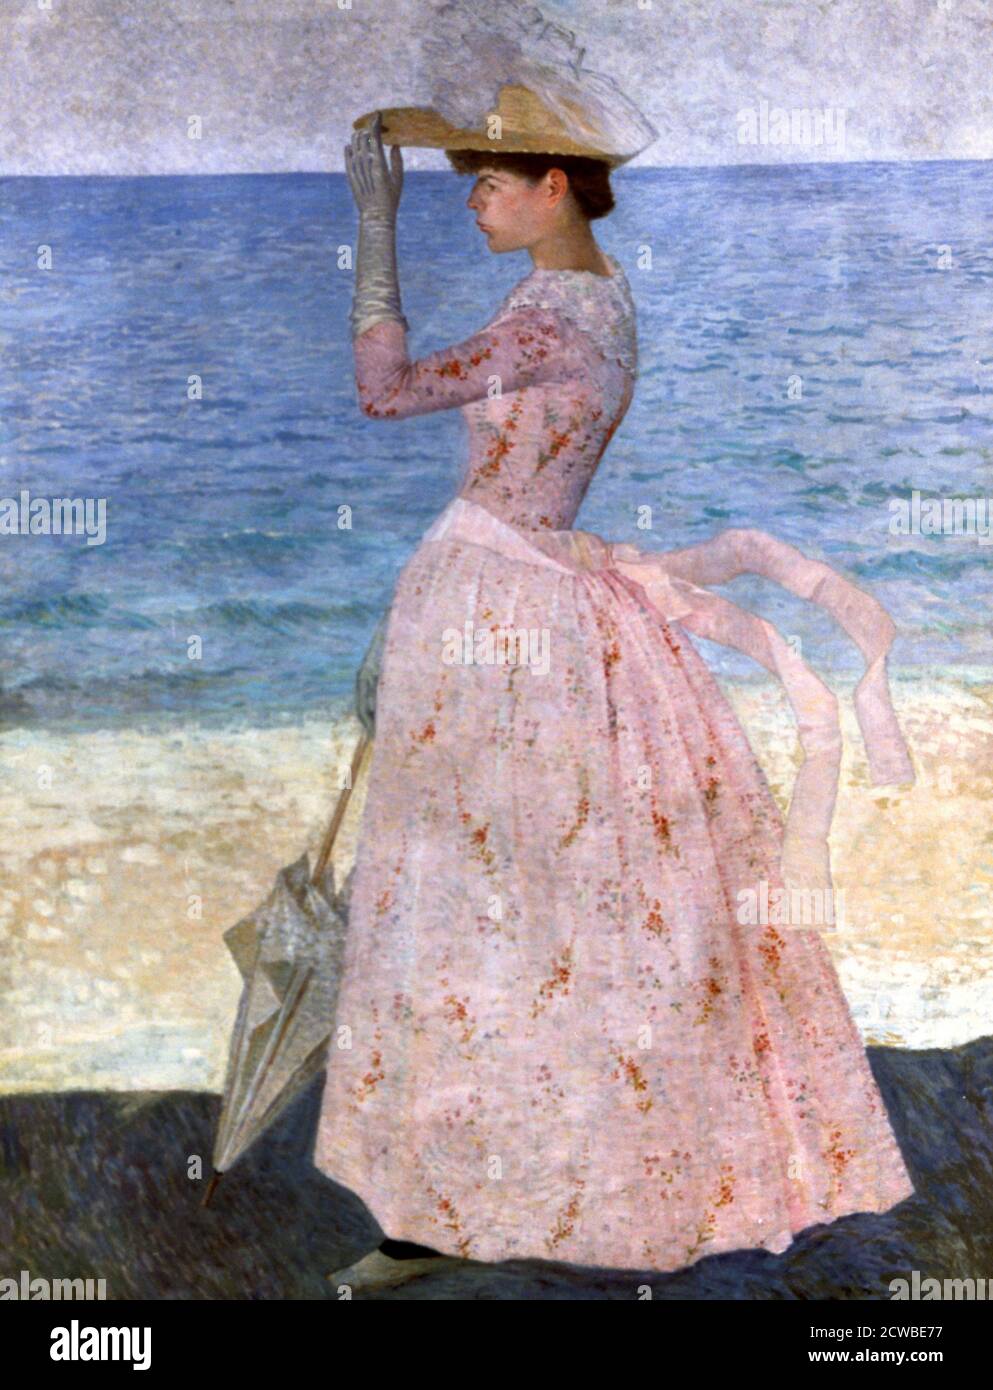 Femme avec le parapluie', 1900 artiste: Aristide Maillol. Aristide Maillol était un sculpteur et peintre français catalan Art Nouveau et Nabi. Banque D'Images